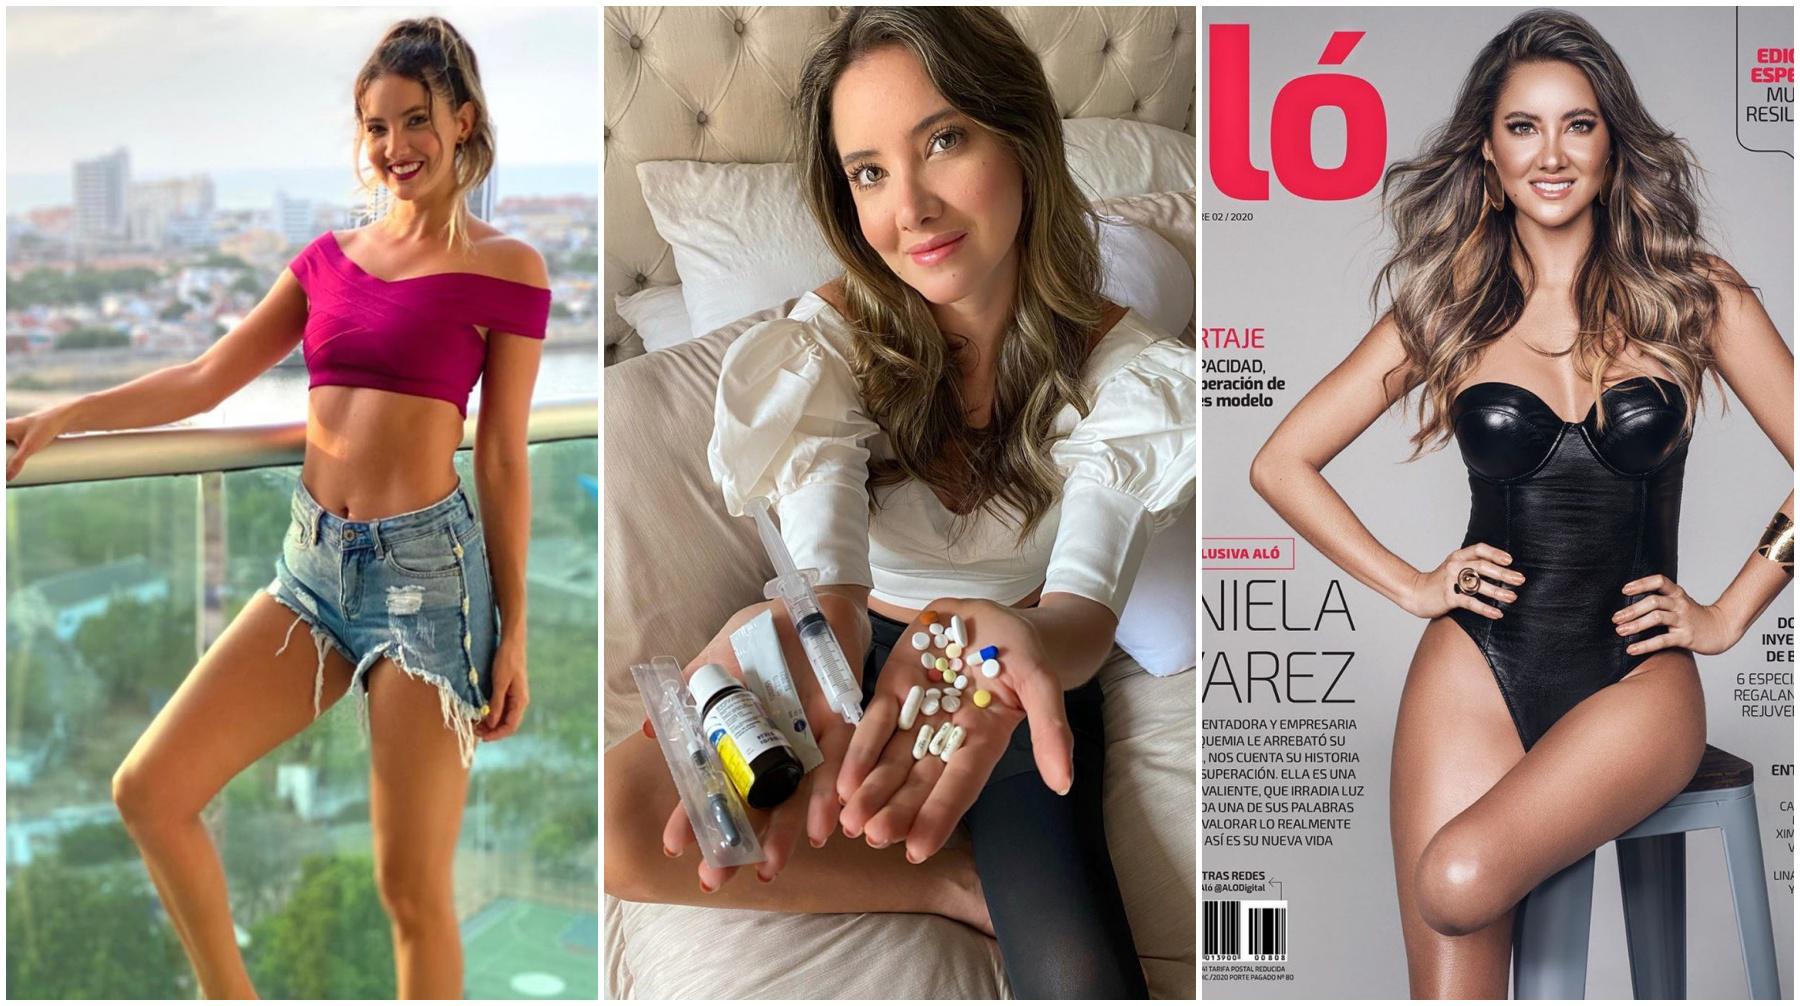 Daniella Álvarez, ganadora del concurso Miss Colombia 2011, sufrió la amputación de la pierna izquierda este 2020. En los meses desde la cirugía, ha buscado llevar una vida normal. Fotos: Danielaalvareztv en Instagram/ Revista Aló.